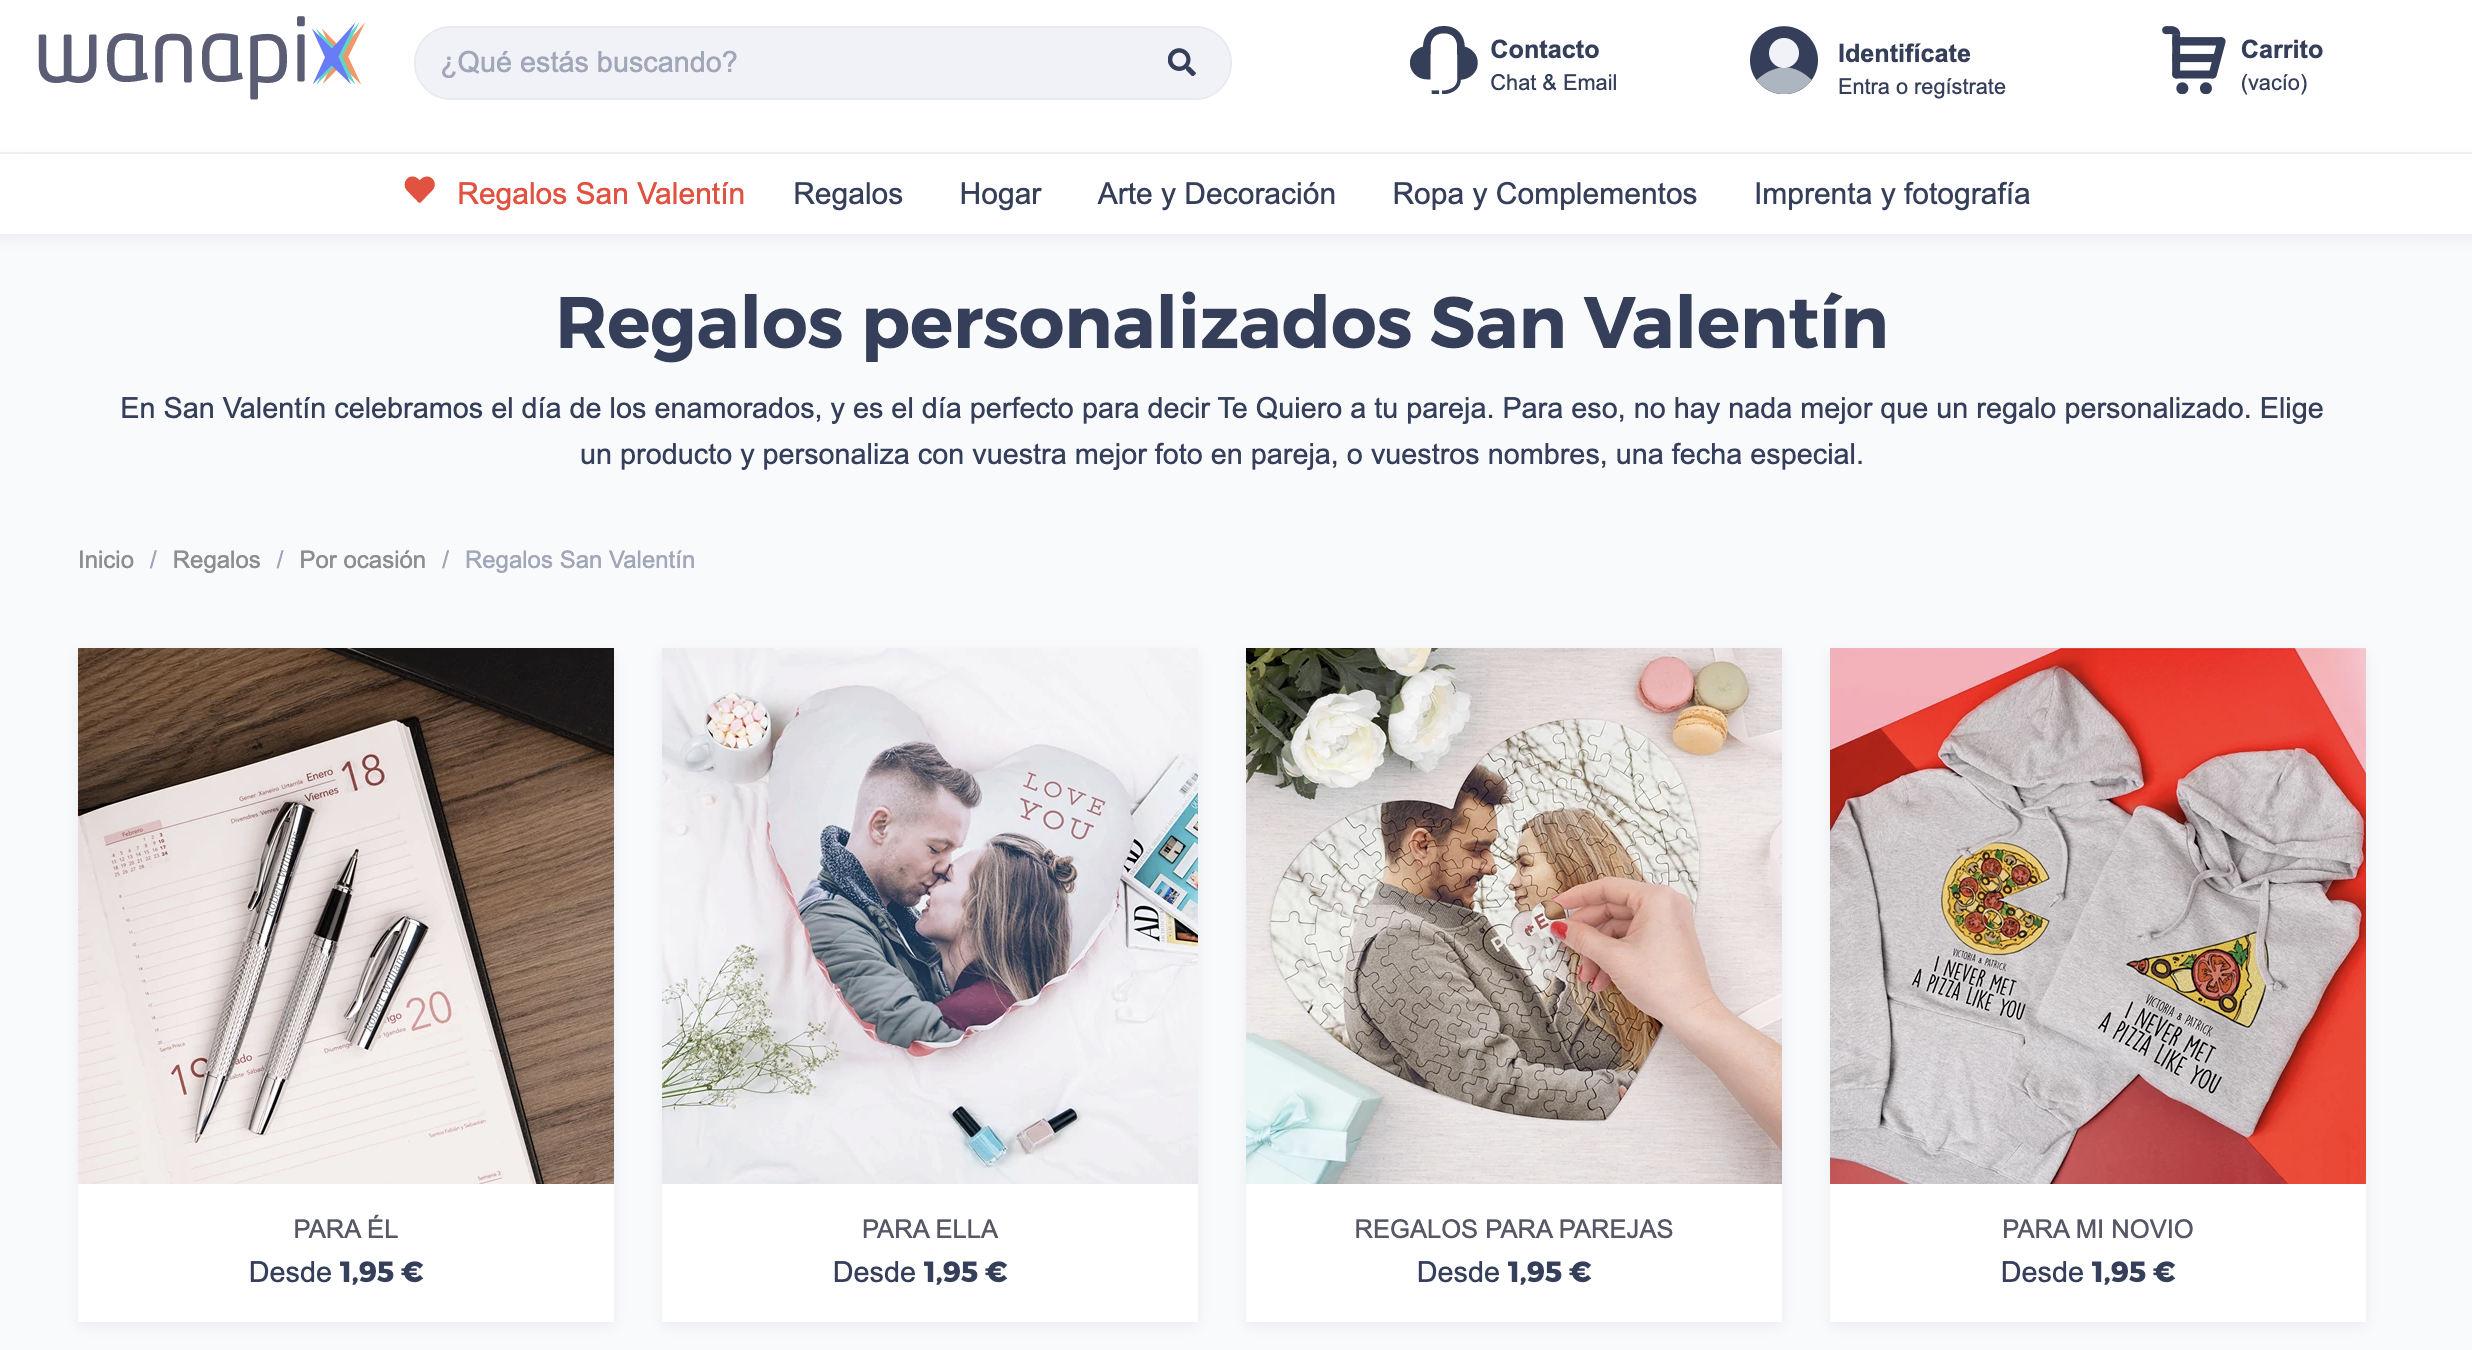 Marketing San Valentín - Ideas de regalos